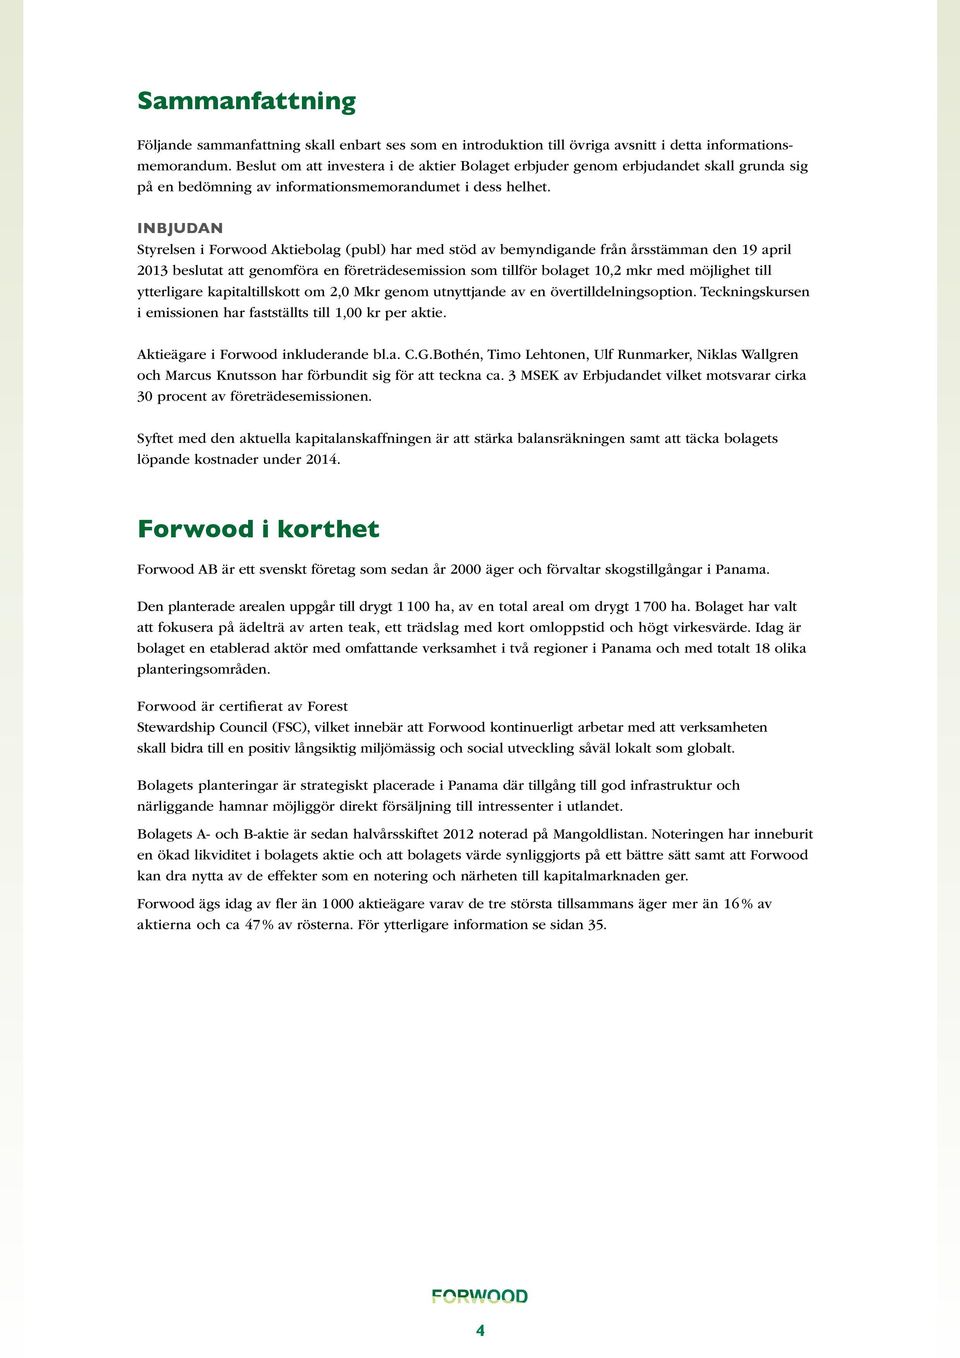 Inbjudan Styrelsen i Forwood Aktiebolag (publ) har med stöd av bemyndigande från årsstämman den 19 april 2013 beslutat att genomföra en företrädesemission som tillför bolaget 10,2 mkr med möjlighet